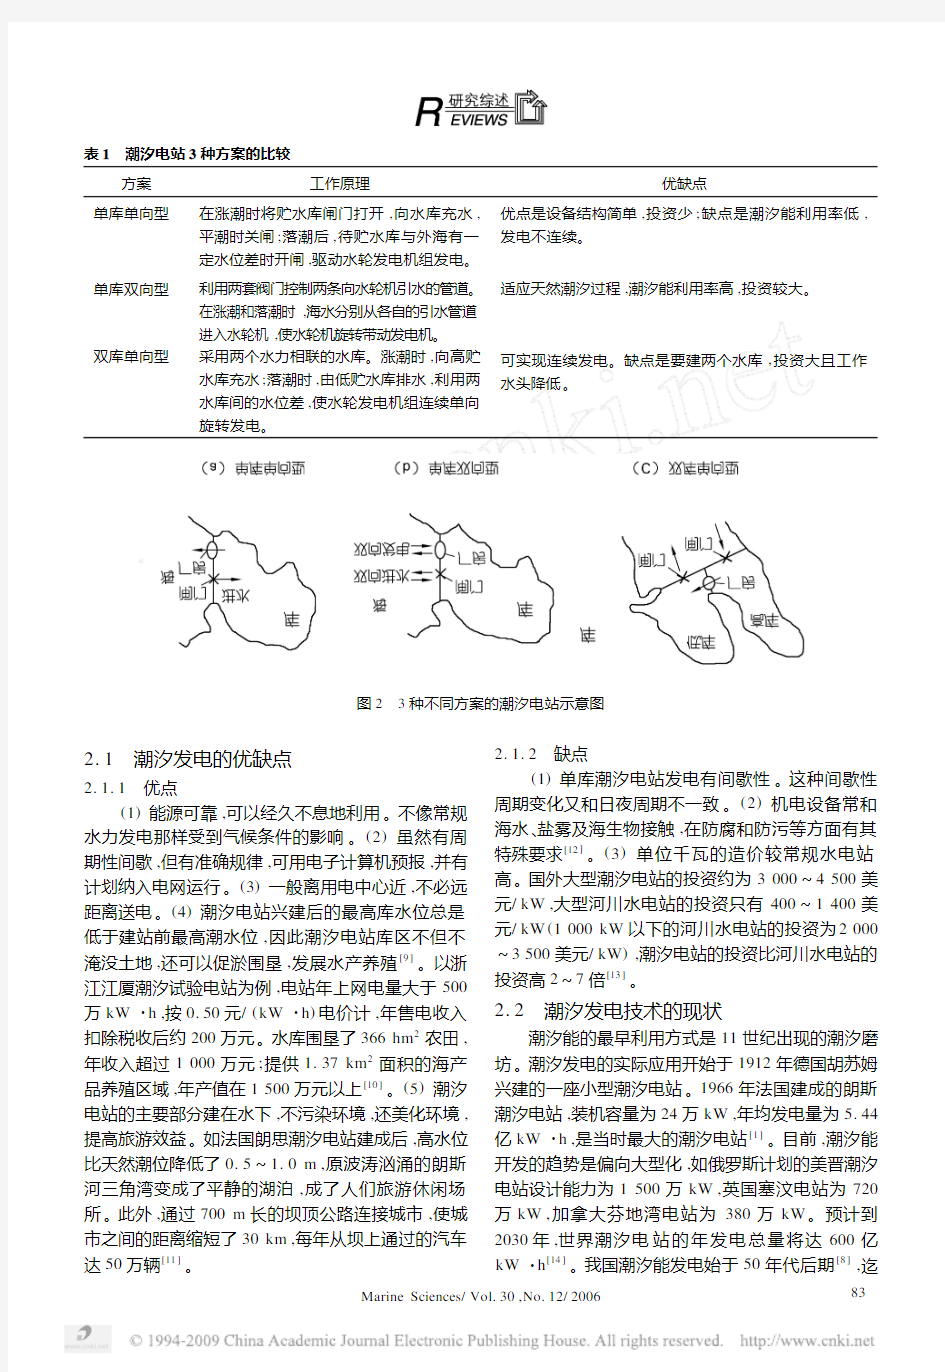 [4] 李书恒,郭伟,朱大奎. 潮汐发电技术的现状与前景[J]. 海洋科学, 2006, (12) .